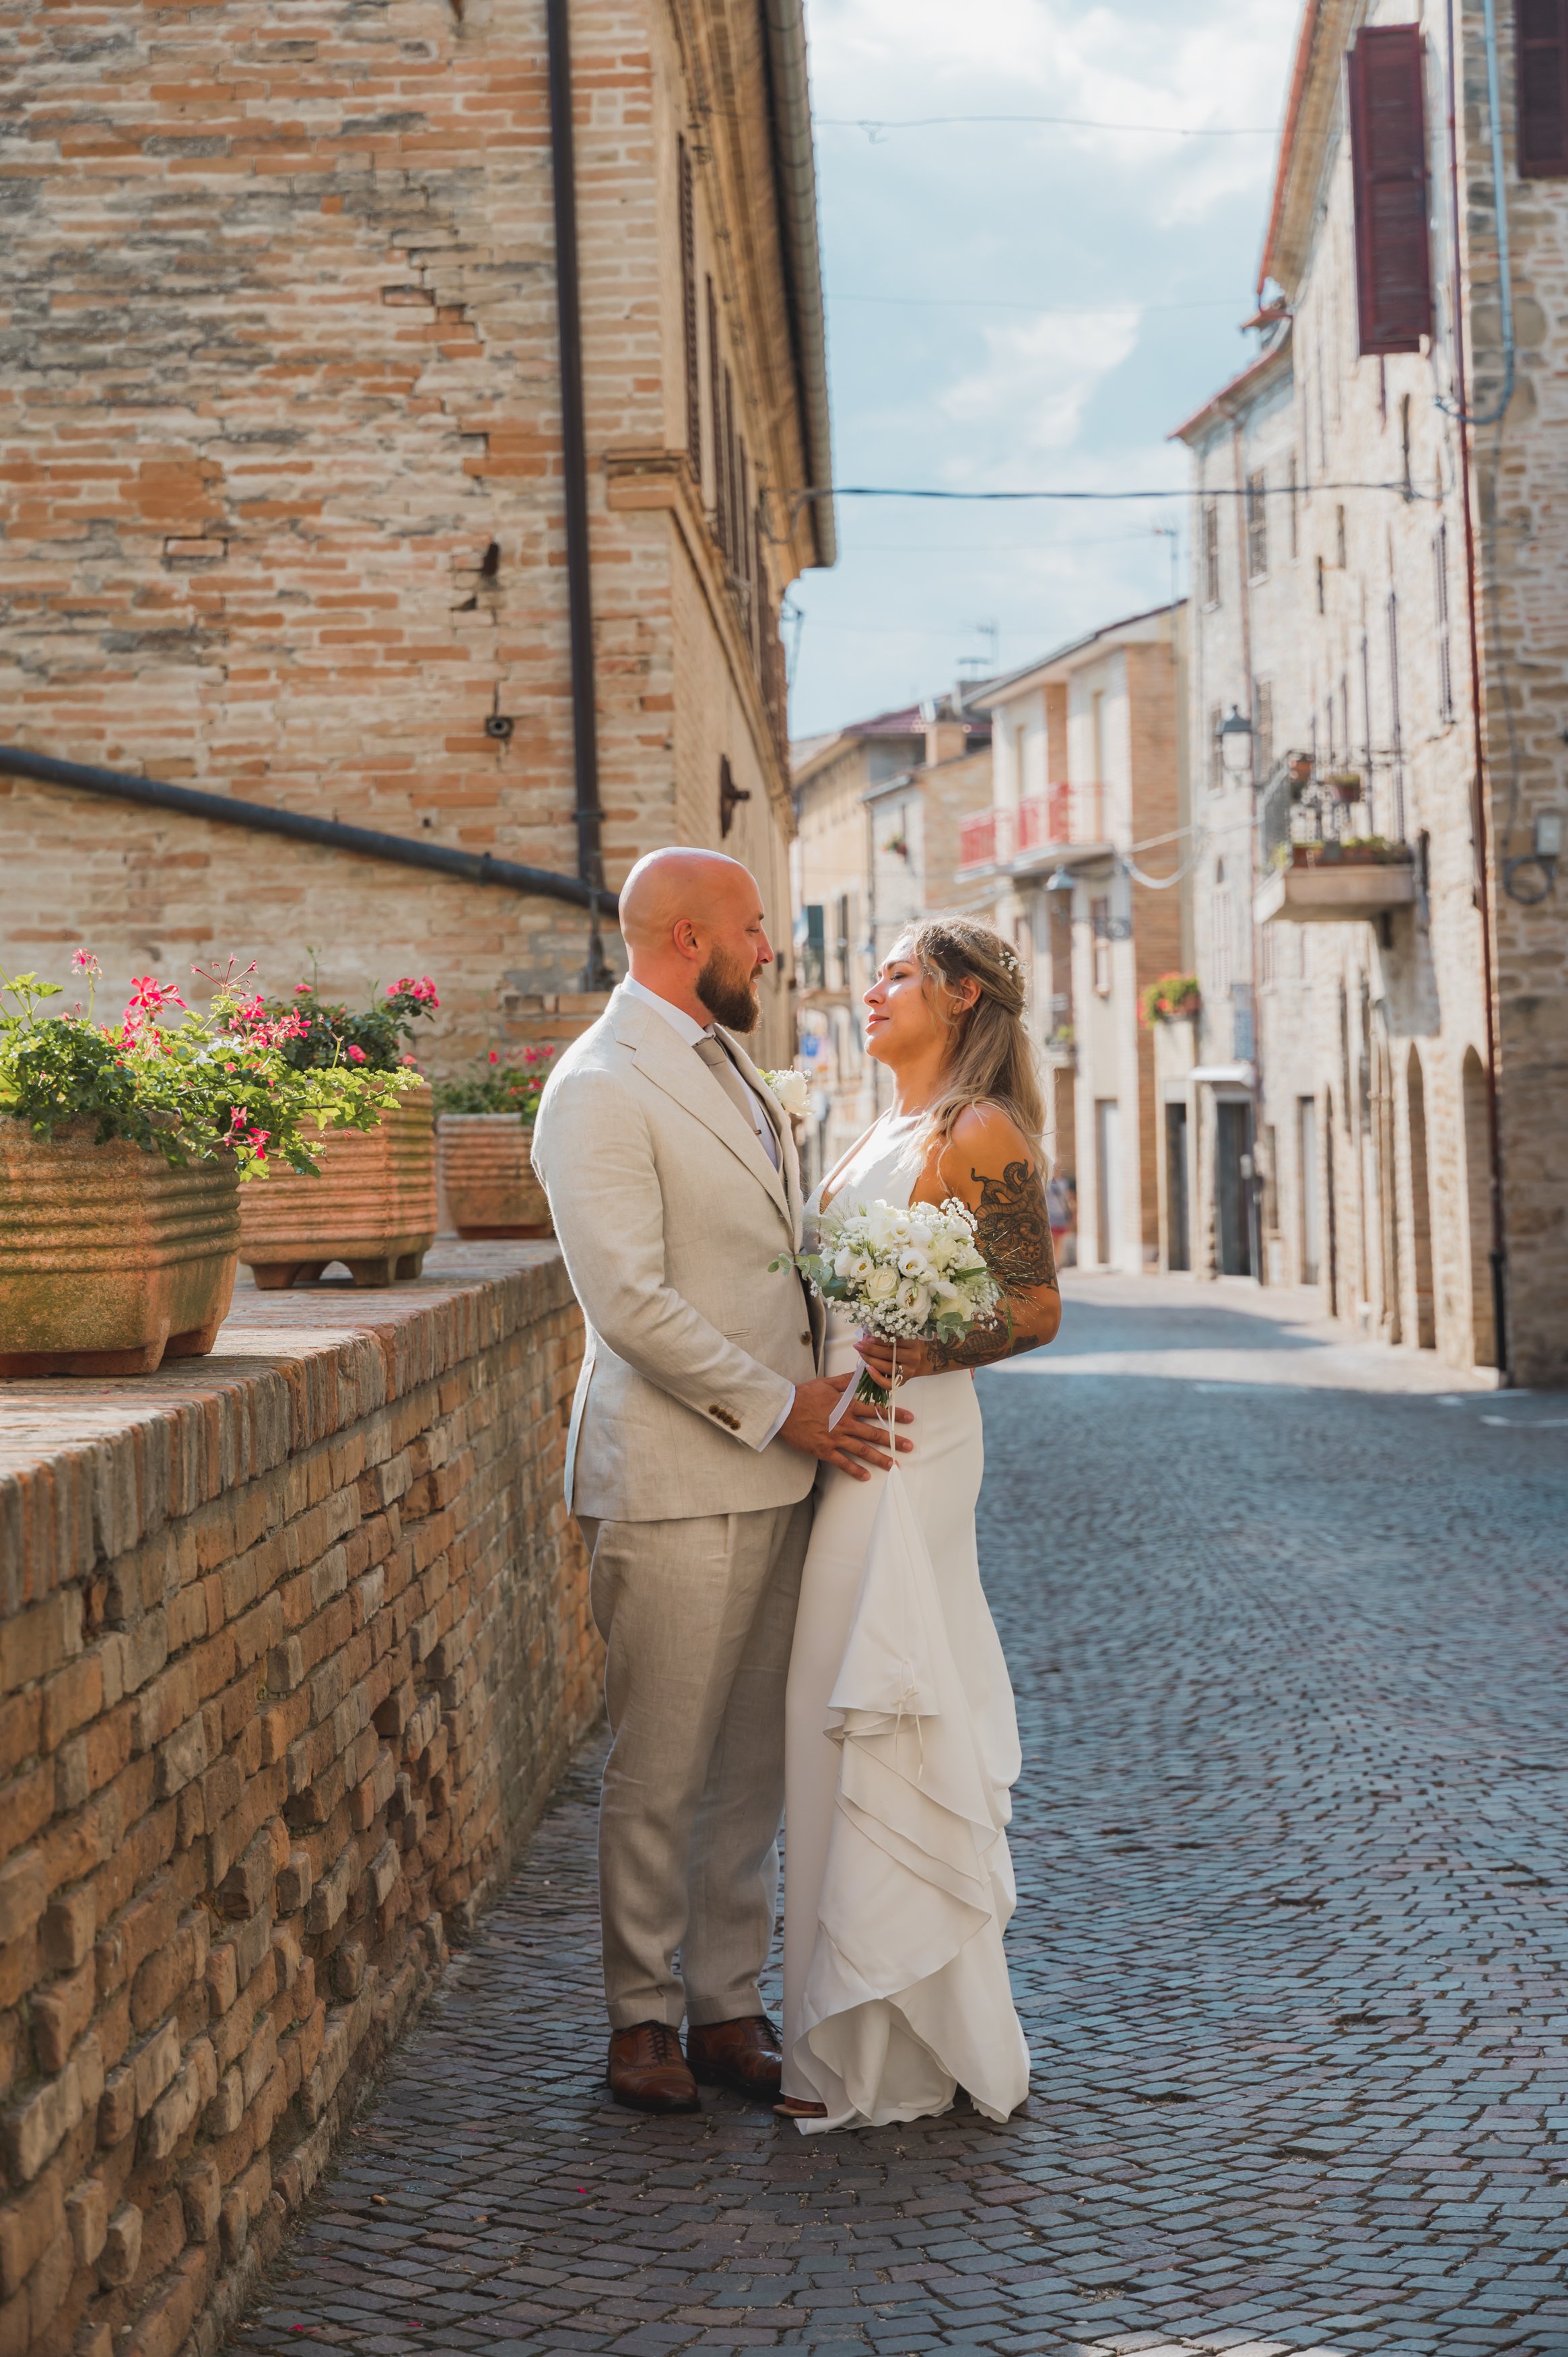 Wedding-Italy-photographer-tuscany-17